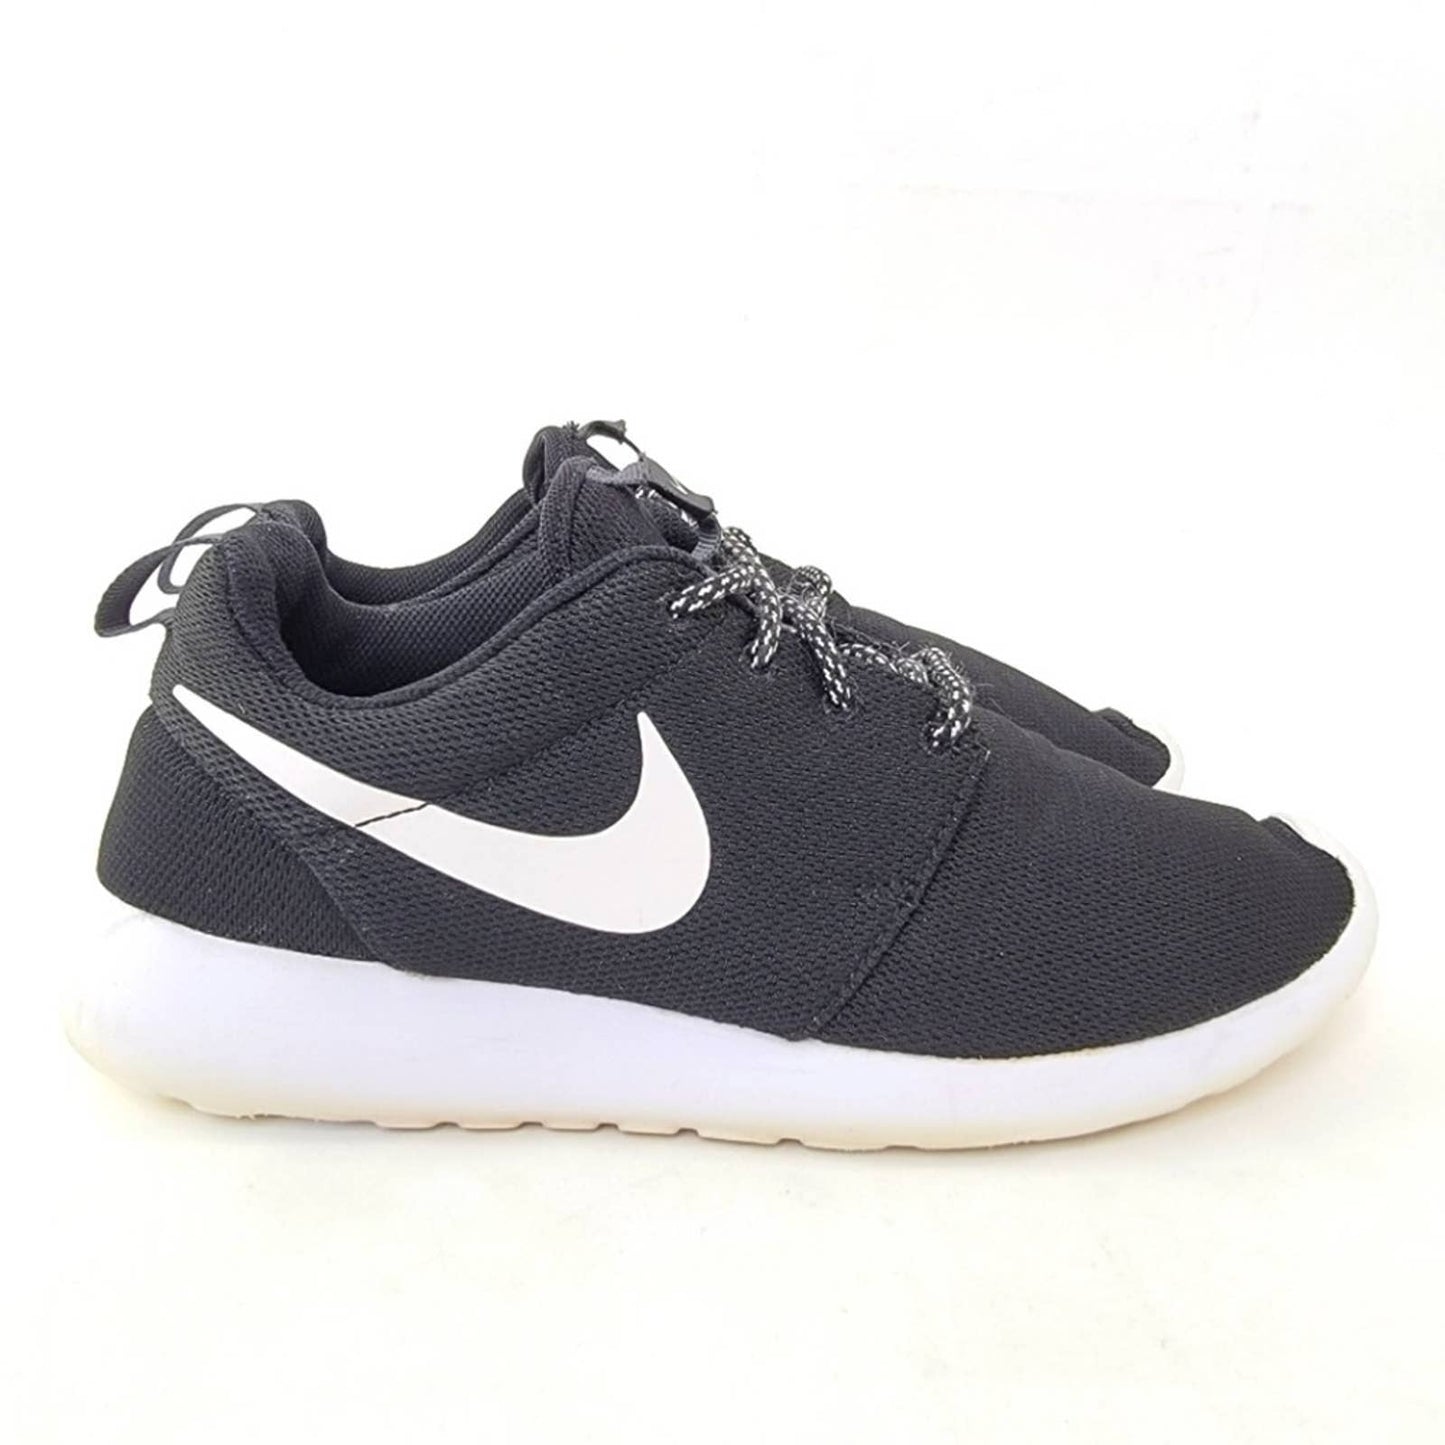 Nike Roshe One Black Running Shoes - 9.5